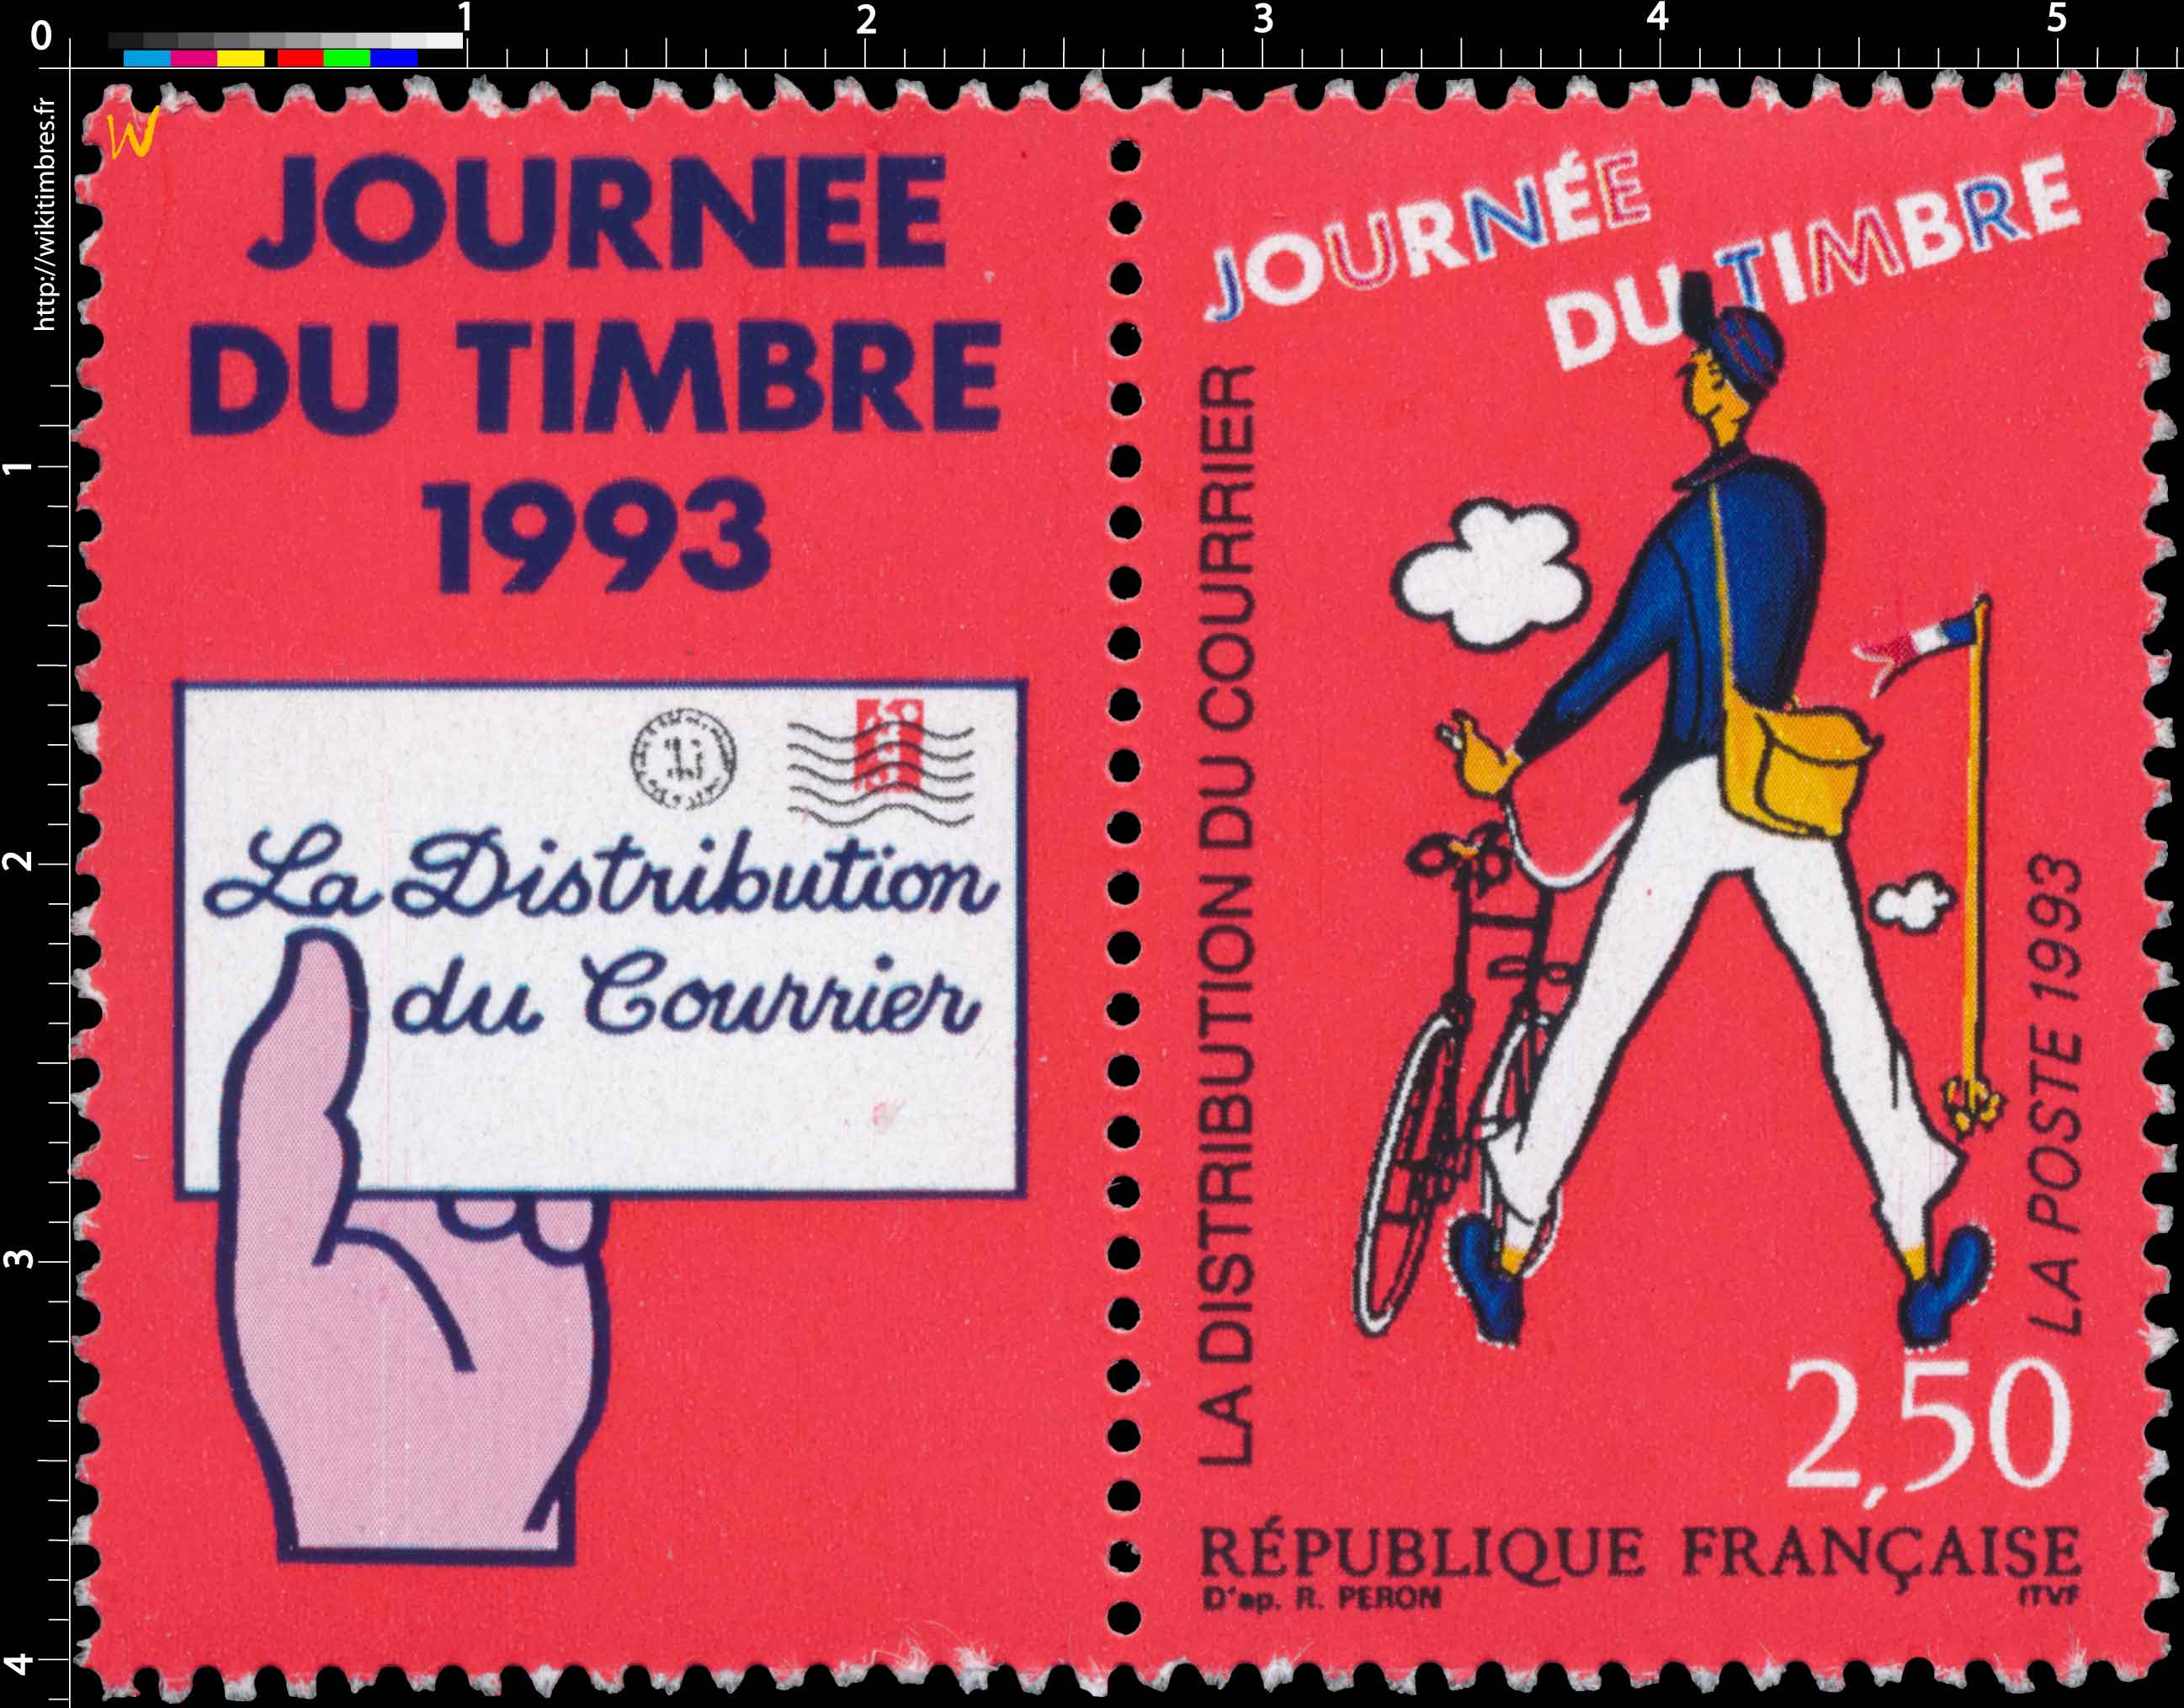 1993 JOURNÉE DU TIMBRE LA DISTRIBUTION DU COURRIER